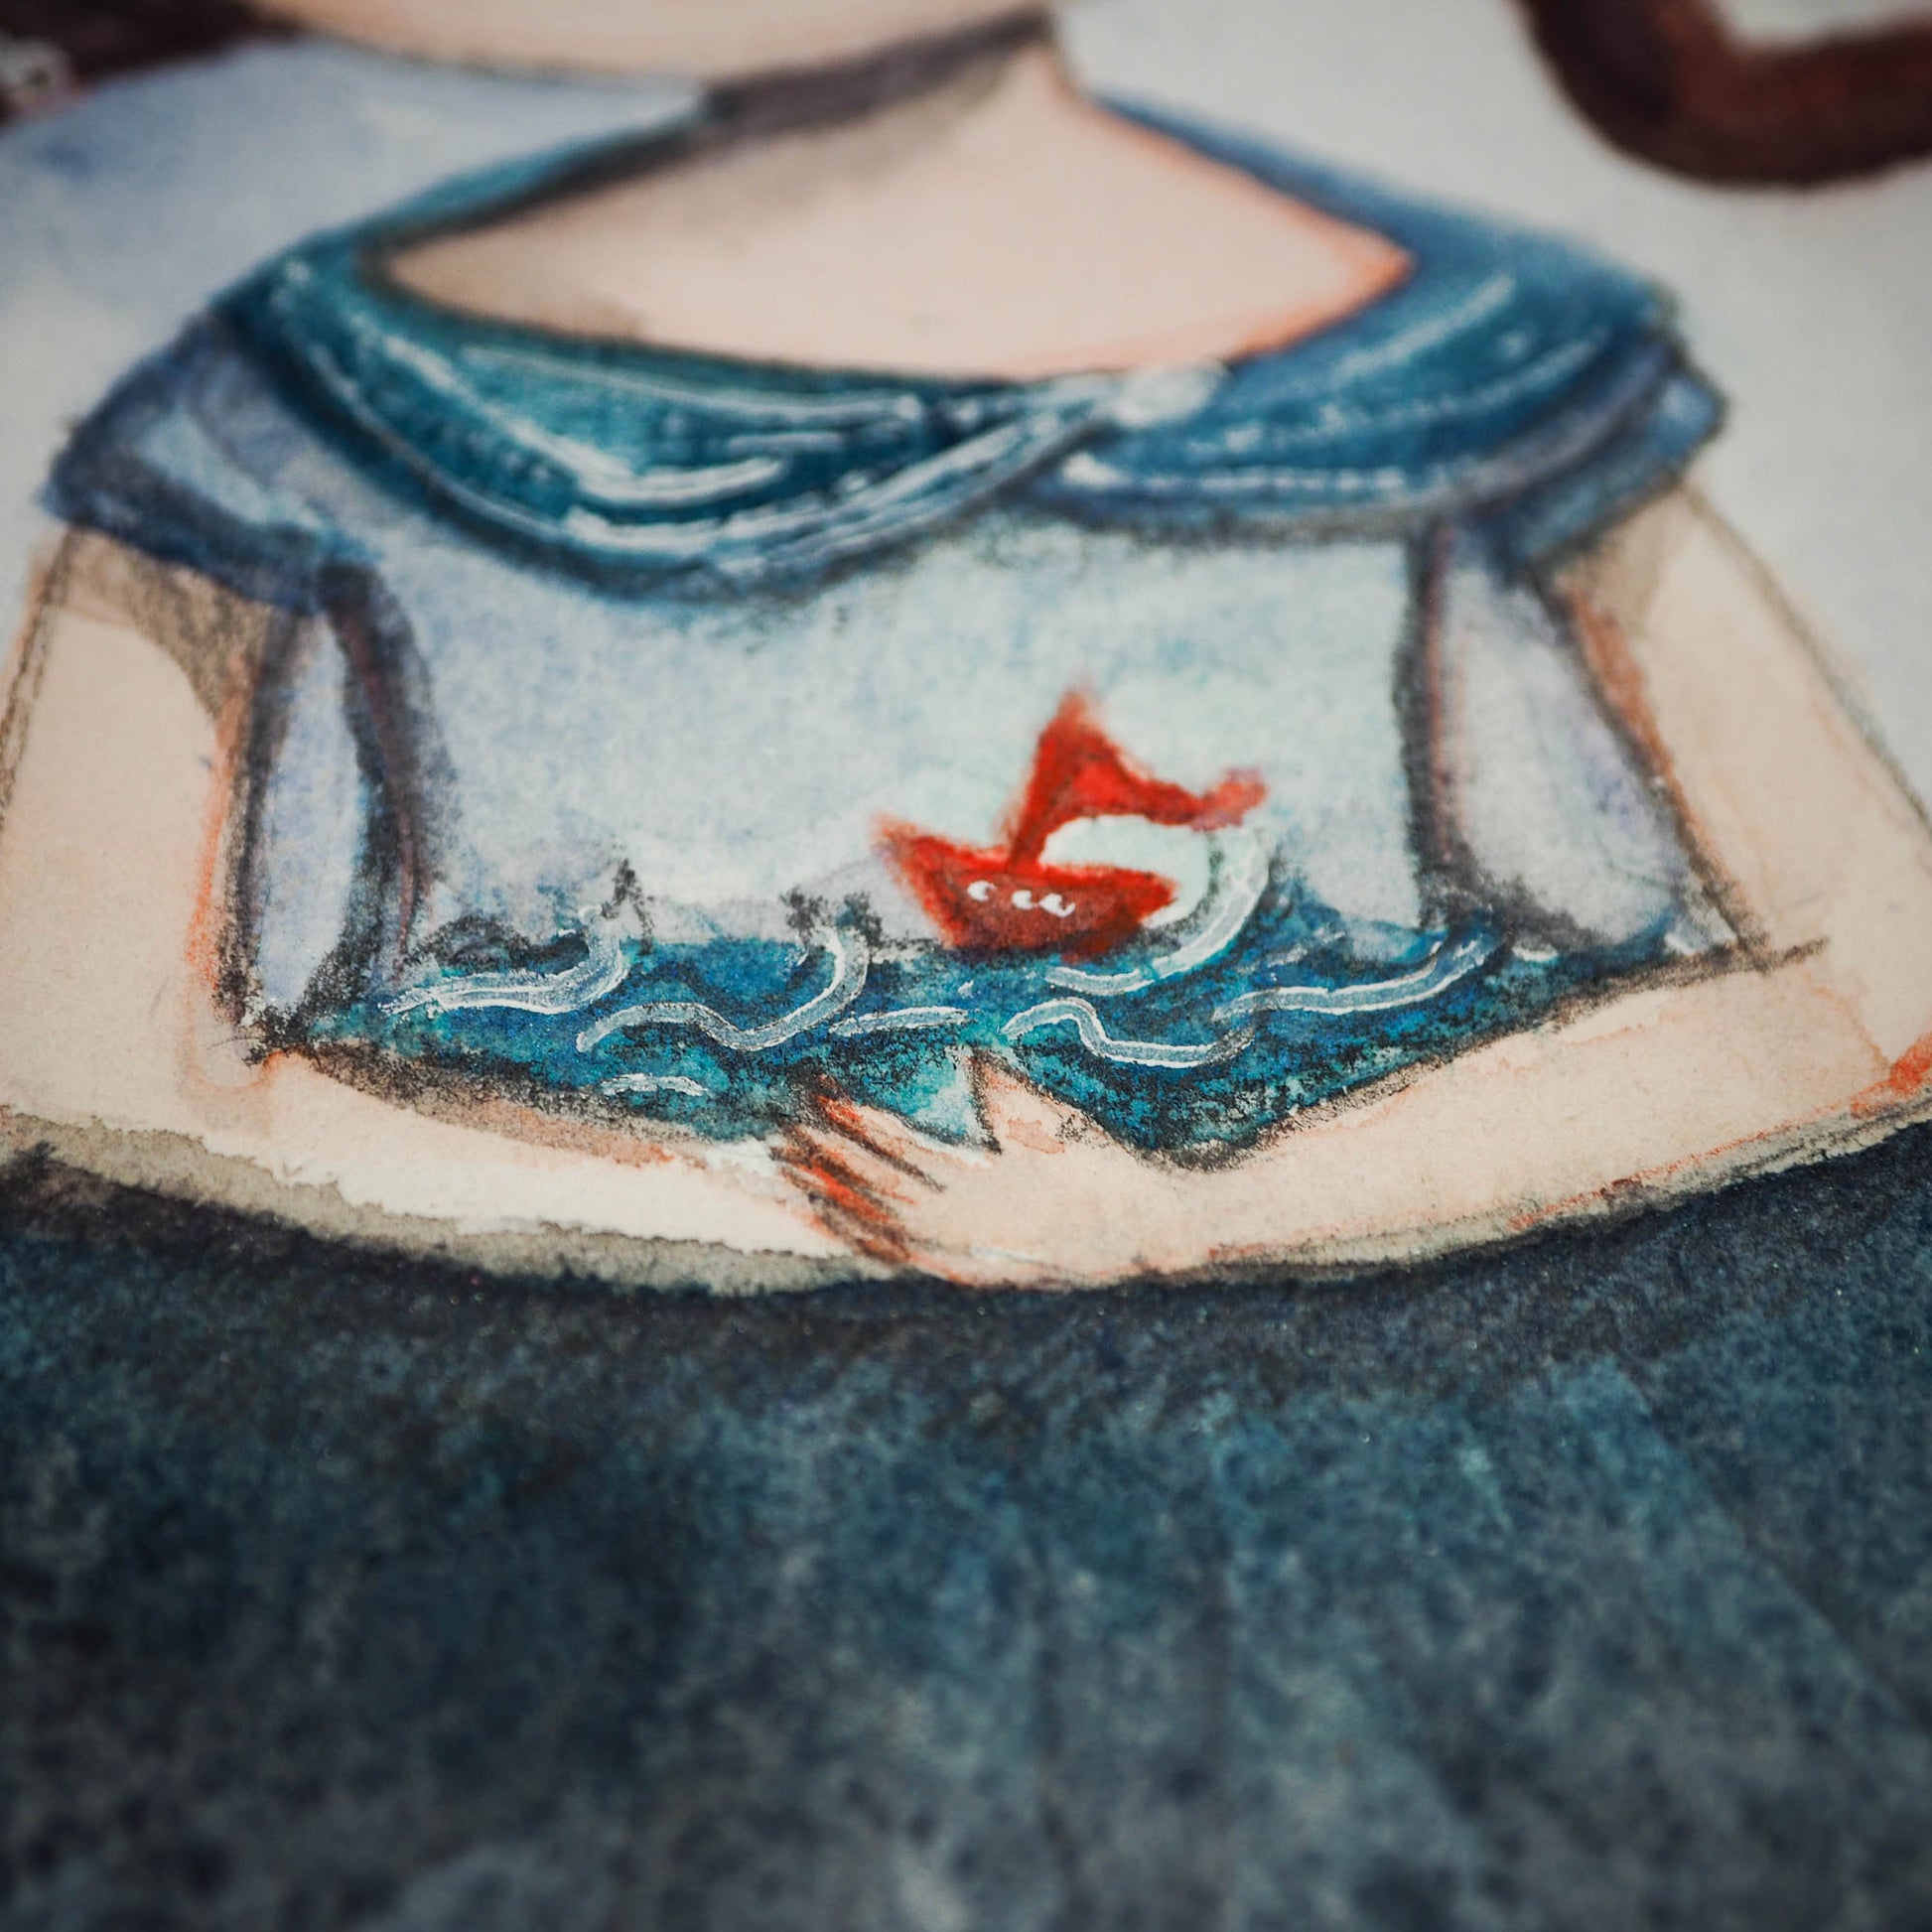 Danita original sailboat watercolor ocean painting whimsical surreal surrealist illustration girl sorrow